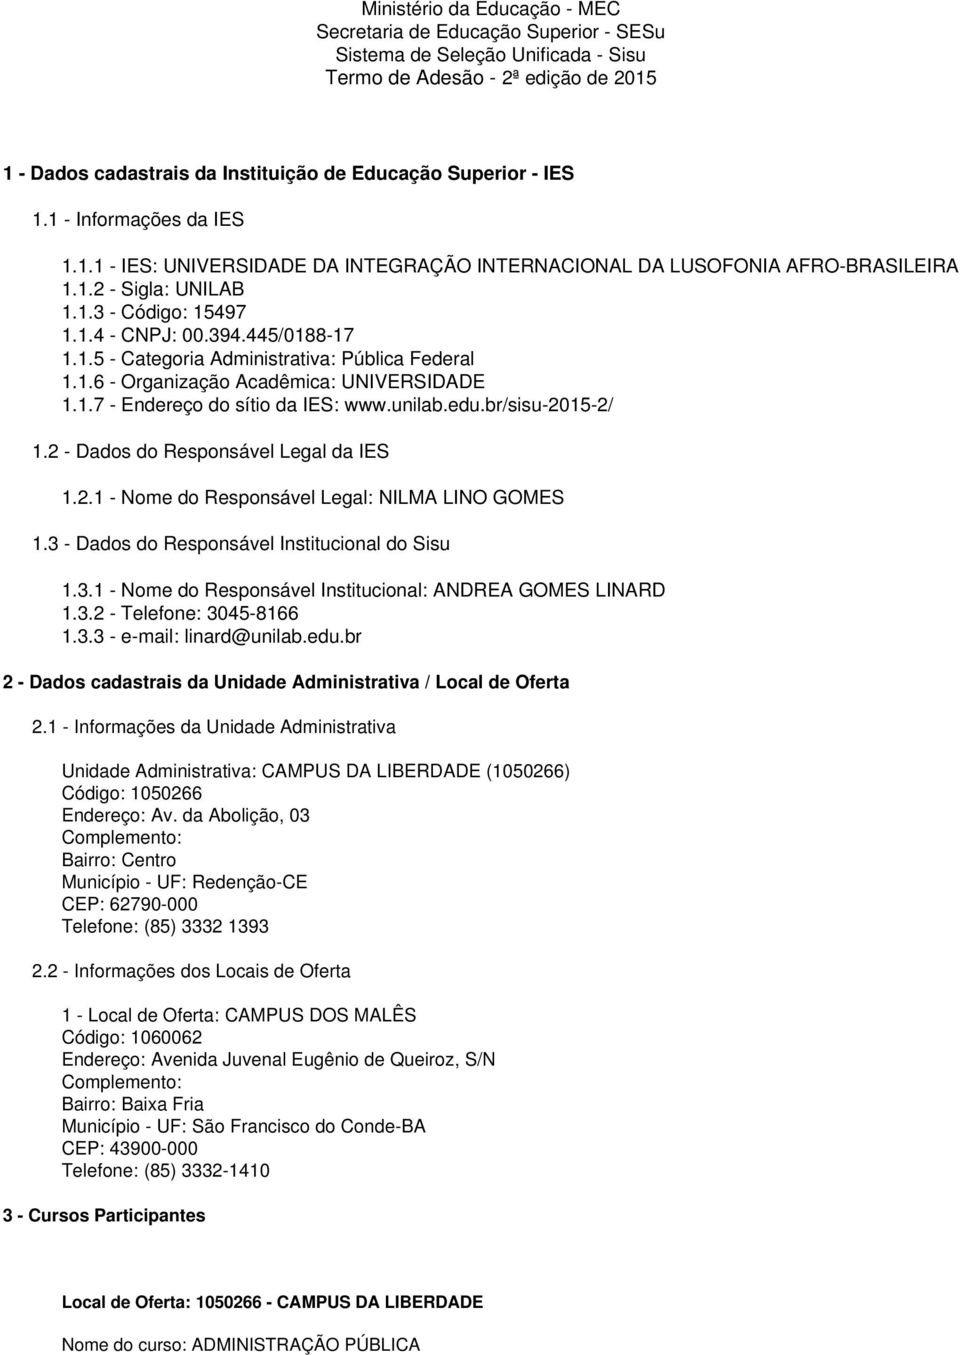 1.6 - Organização Acadêmica: UNIVERSIDADE 1.1.7 - Endereço do sítio da IES: www.unilab.edu.br/sisu-2015-2/ 1.2 - Dados do Responsável Legal da IES 1.2.1 - Nome do Responsável Legal: NILMA LINO GOMES 1.